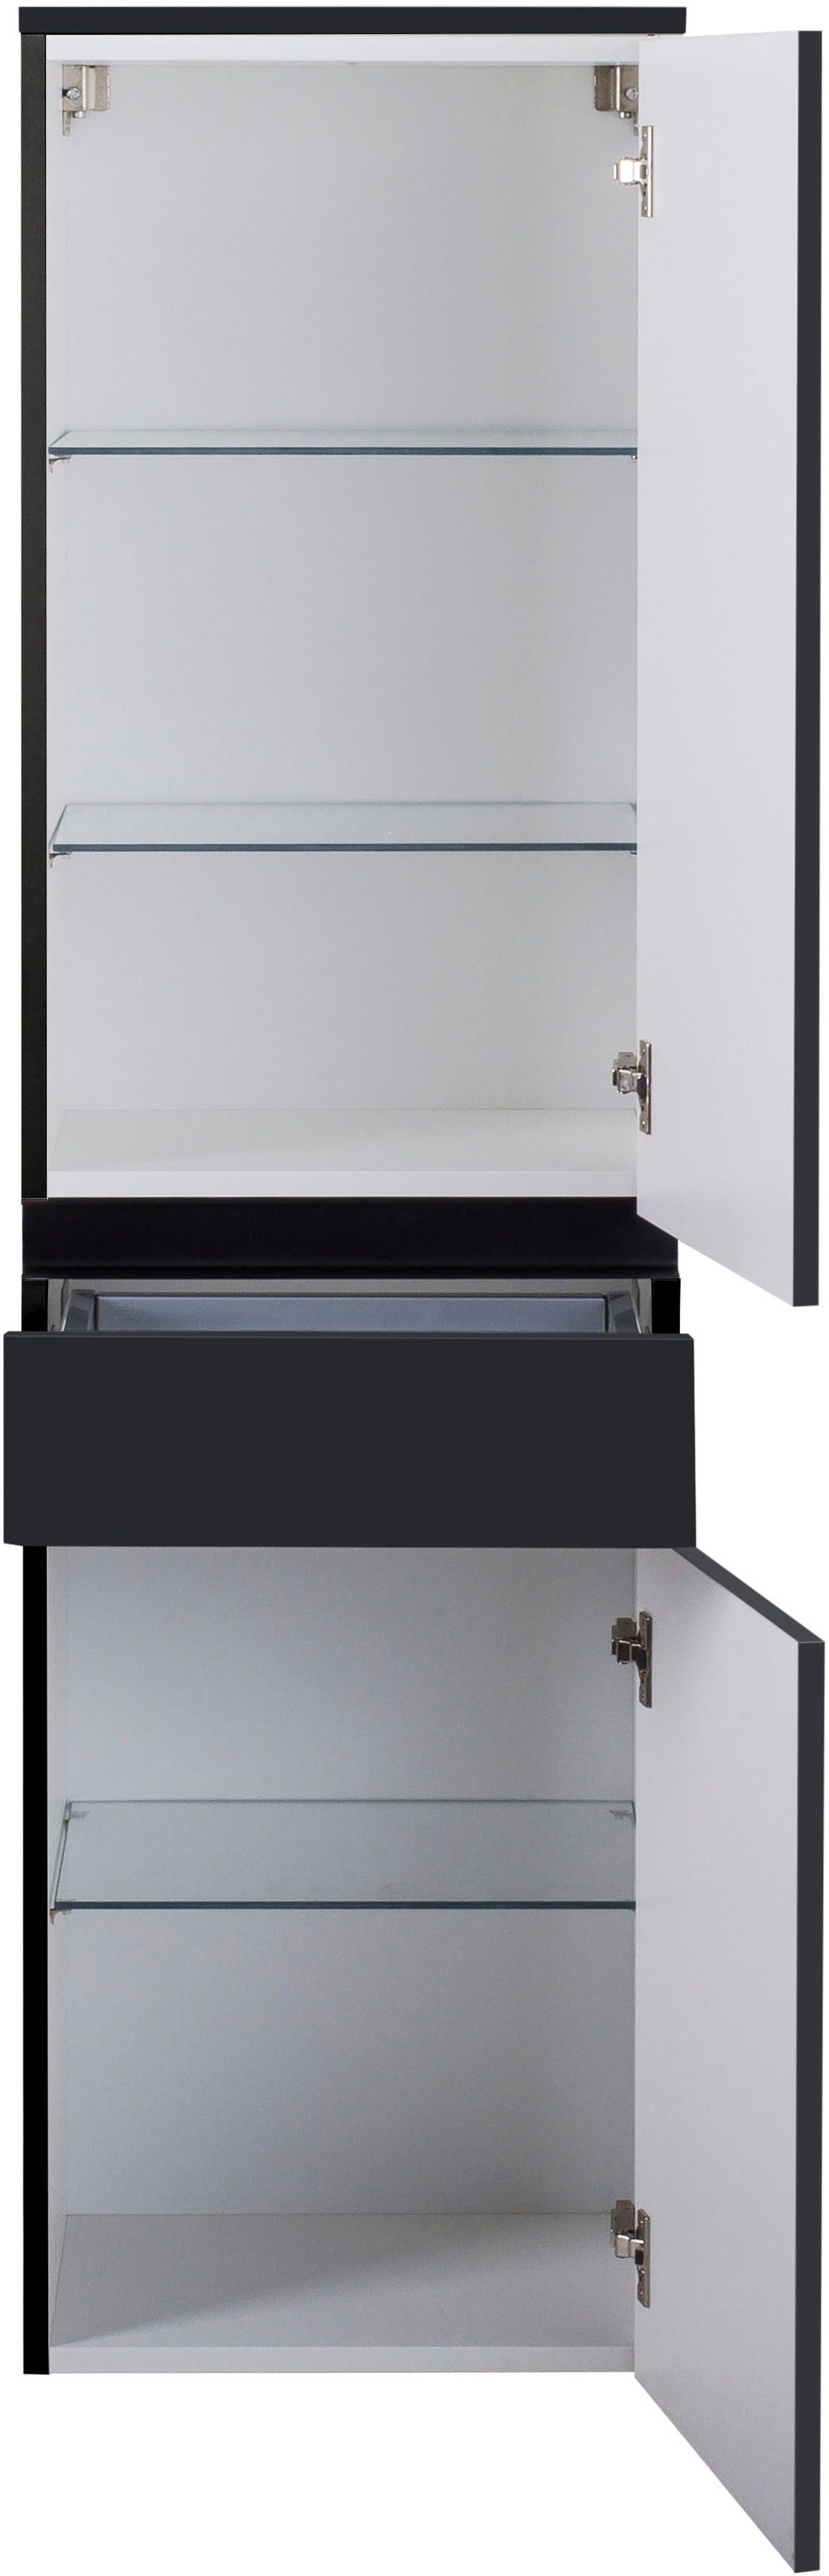 MARLIN Midischrank »3510clarus«, 40 cm breit, Soft-Close-Funktion, vormontierter Badschrank, Badmöbel